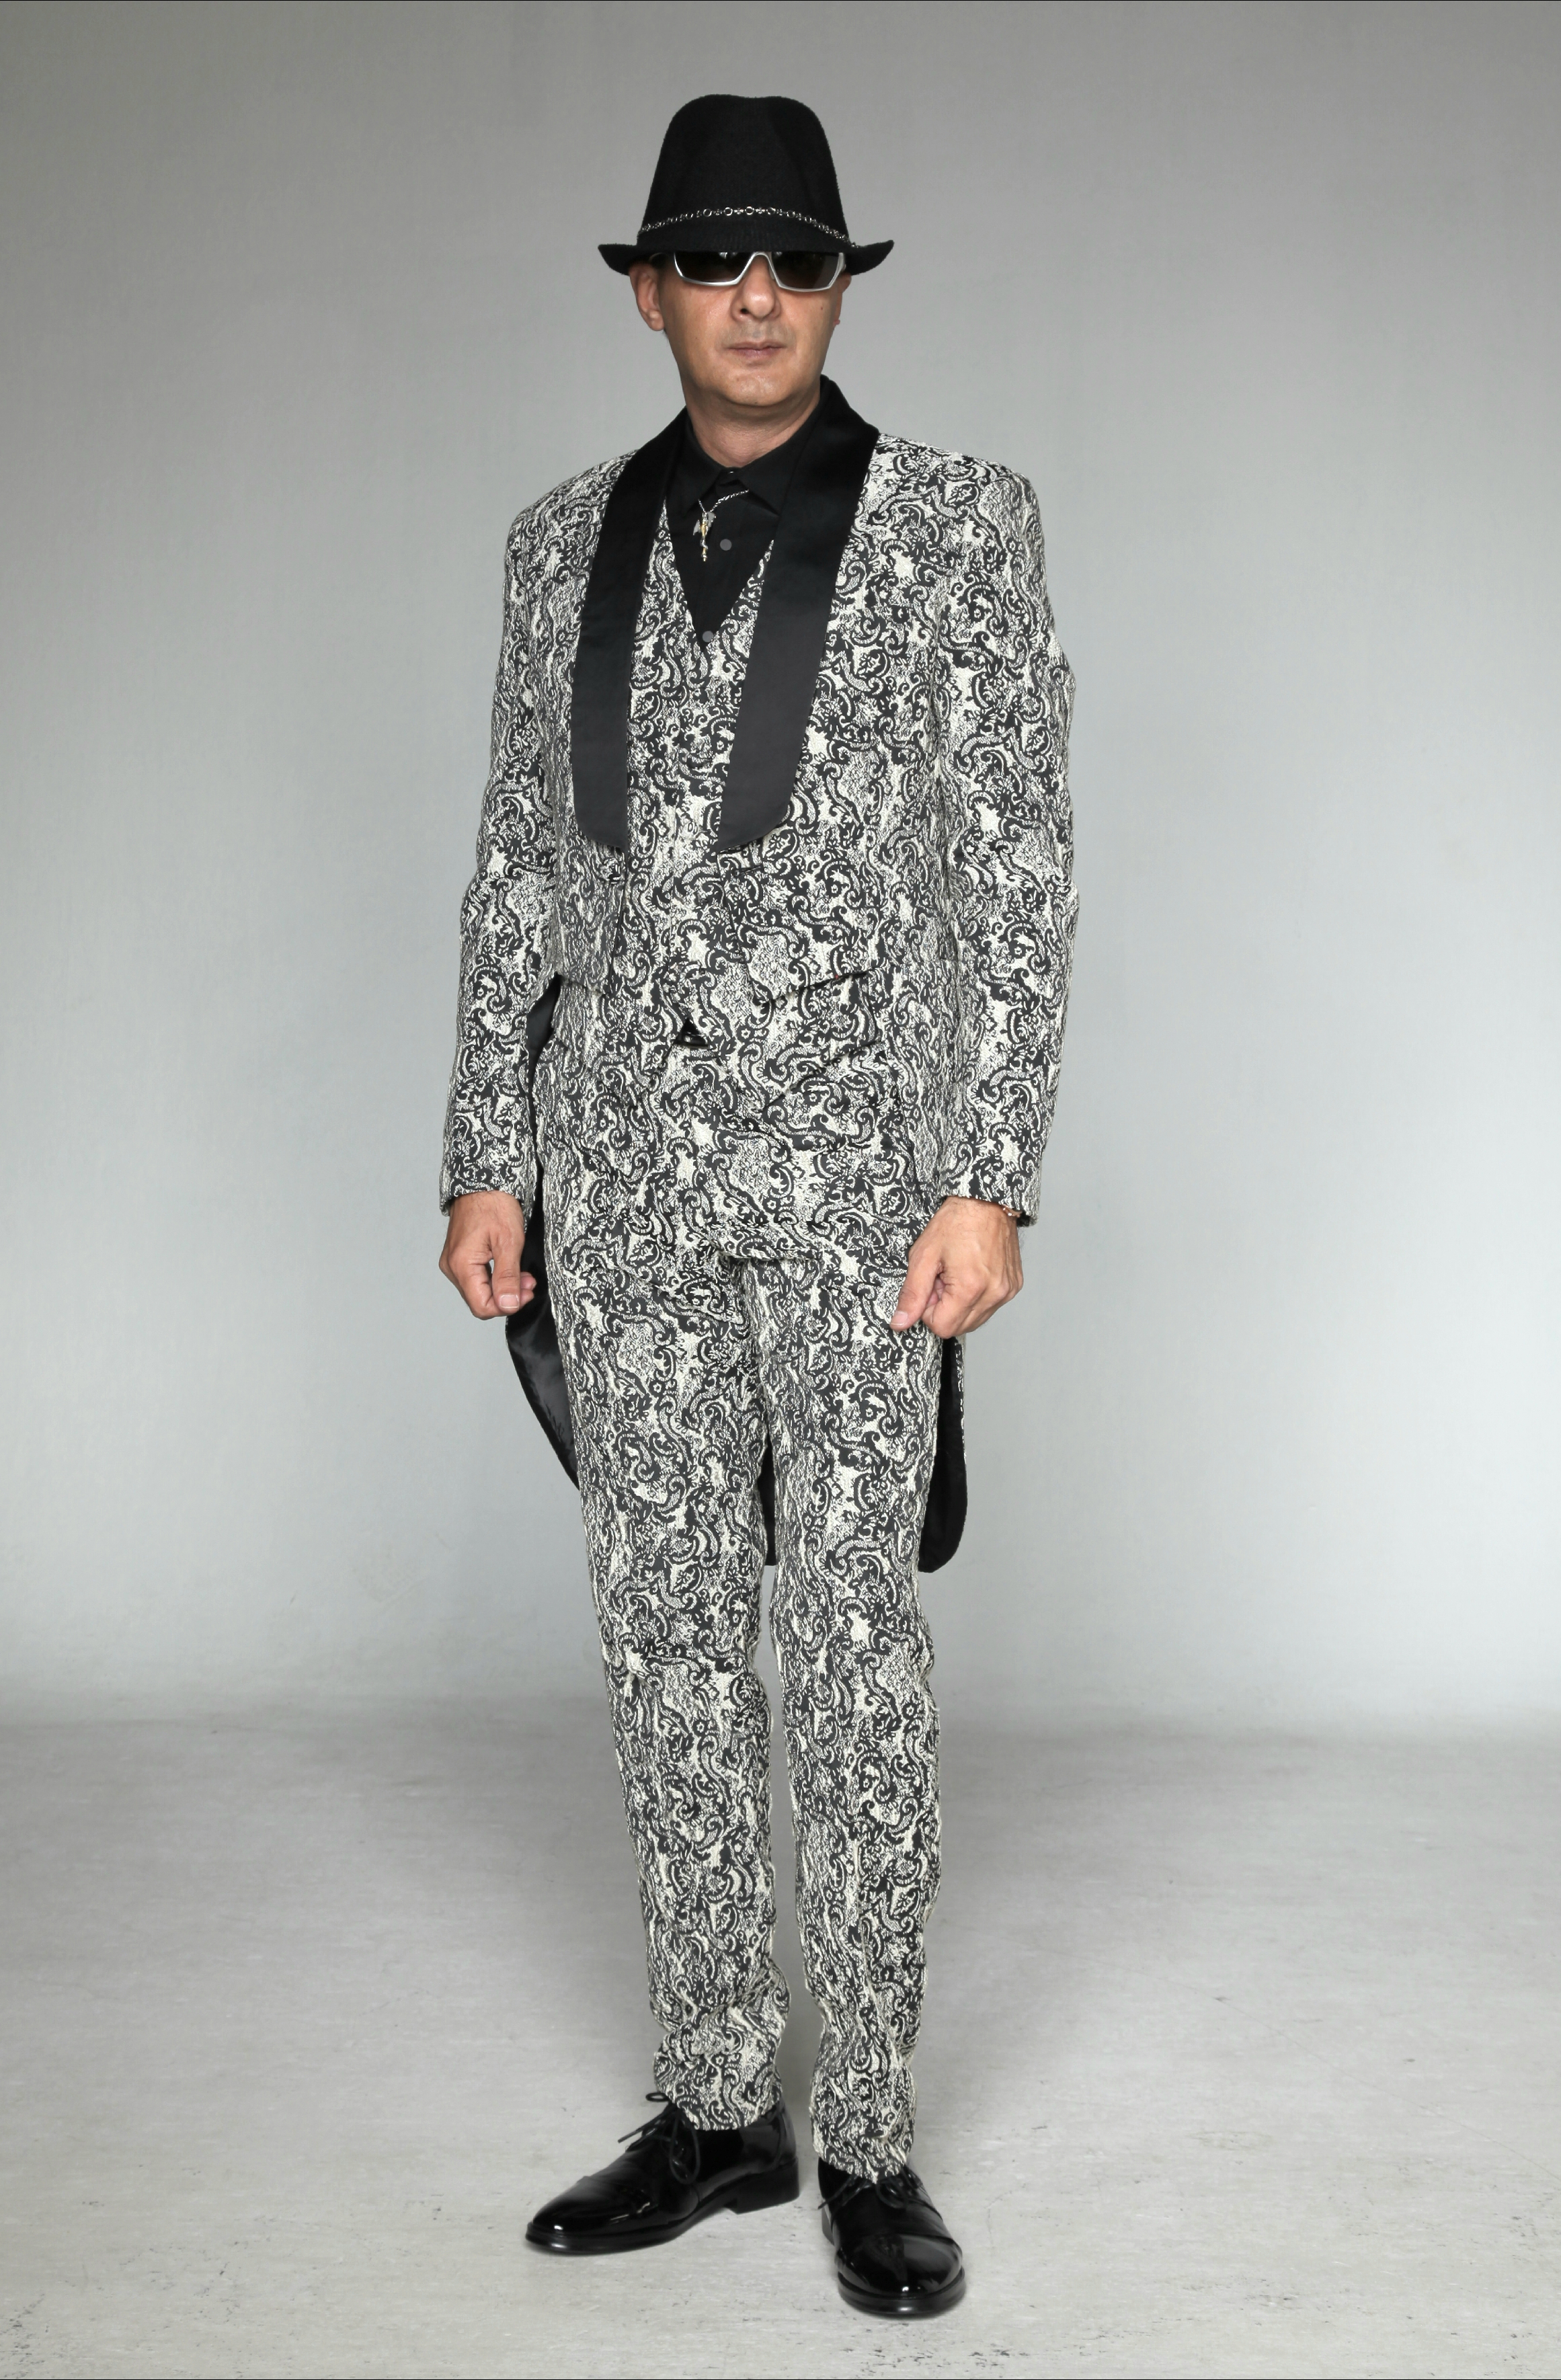 0499A-tailor_tailors_bespoke_tailoring_tuxedo_tux_wedding_black_tie_suit_suits_singapore_business